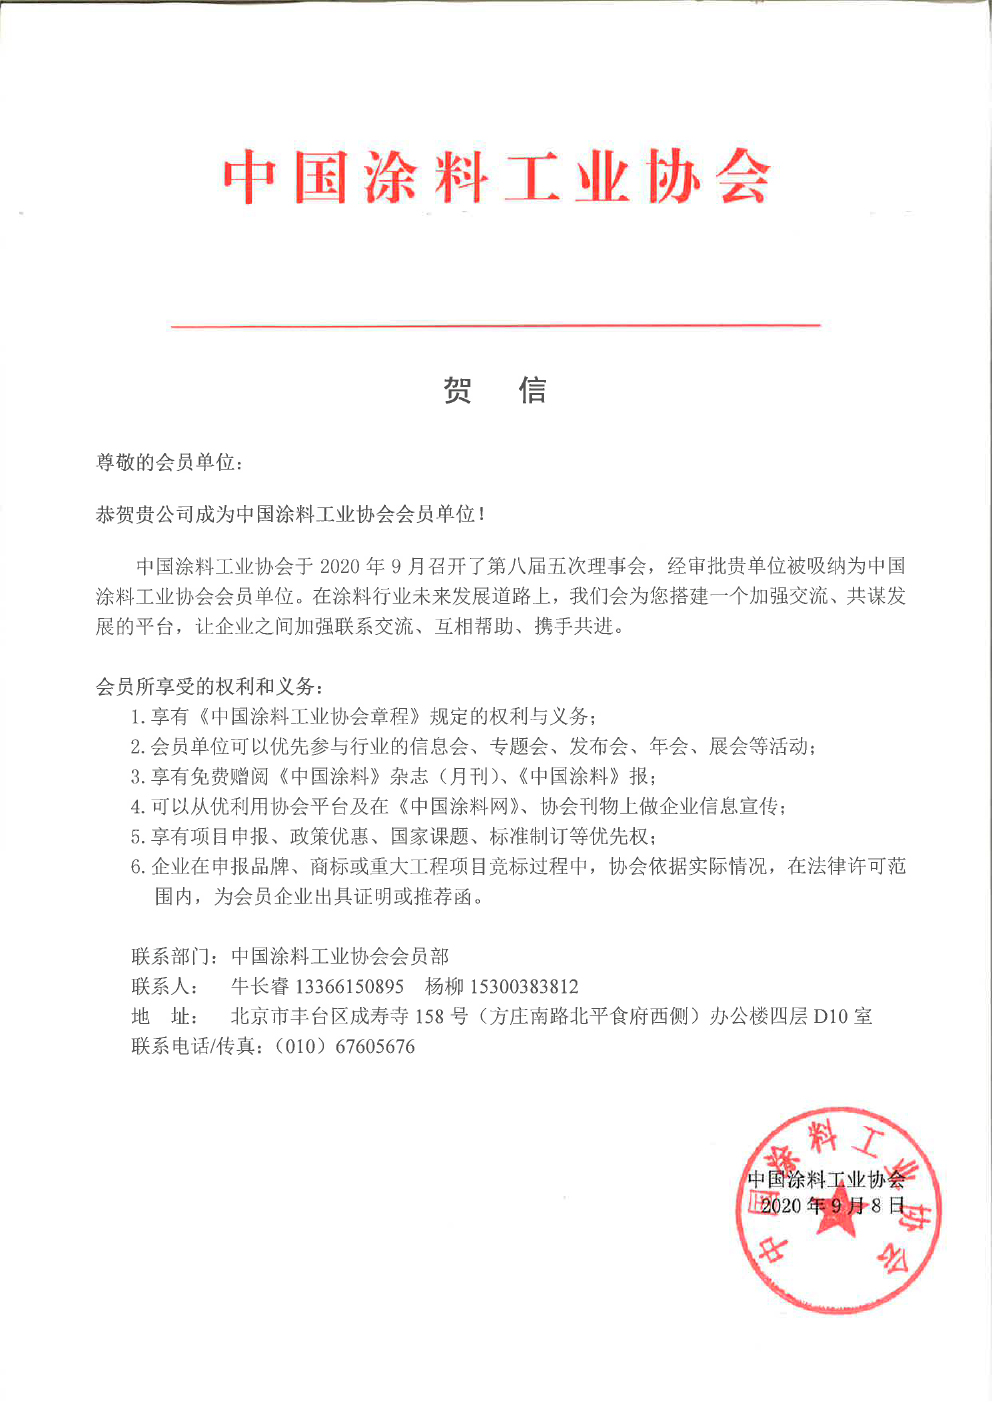 德麦森无机涂料成为中国涂料工业协会会员单位